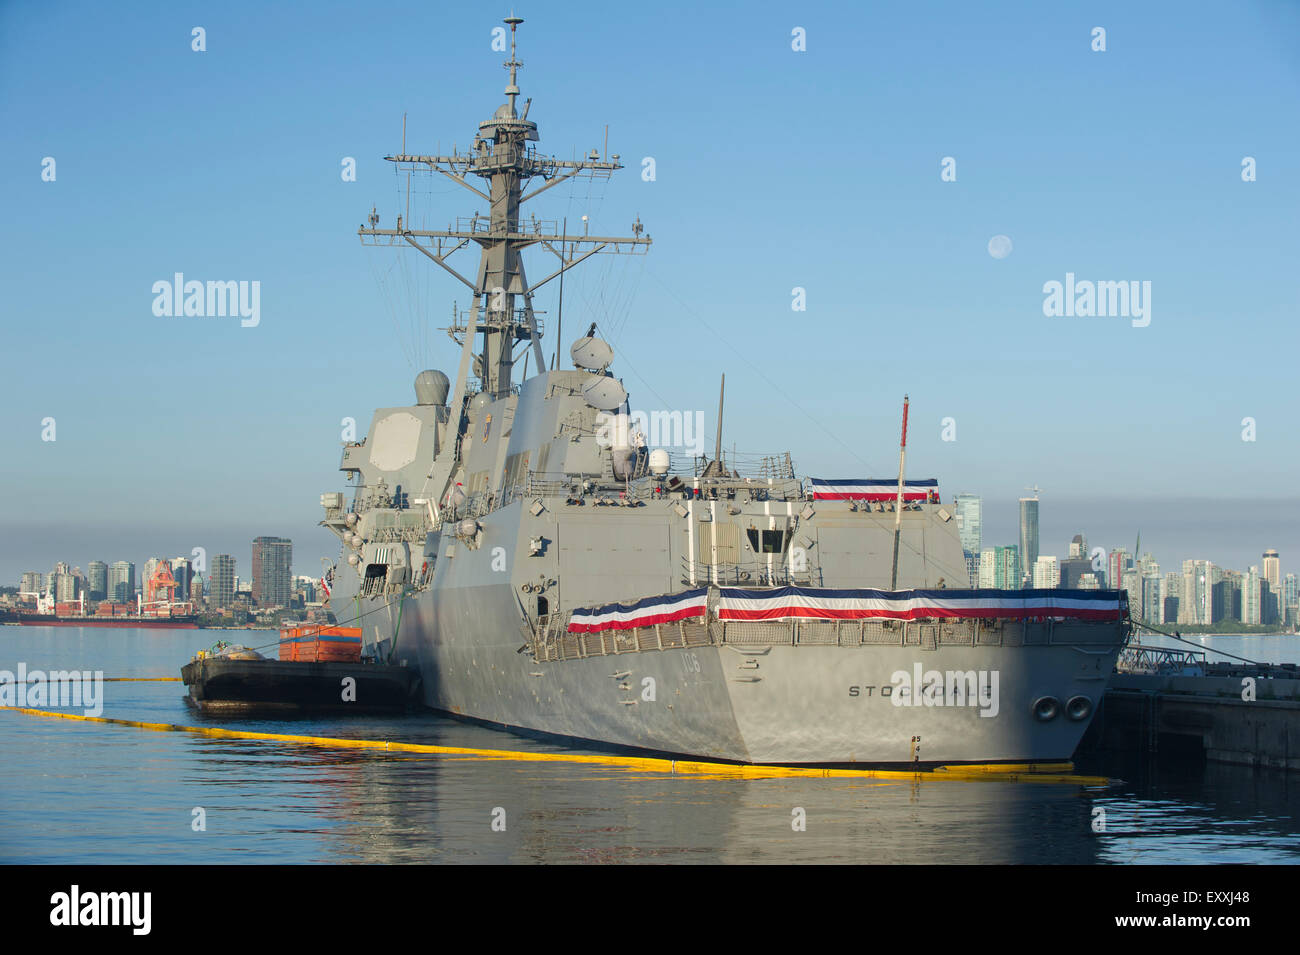 États-unis, destroyer lance-missiles USS Stockdale (DDG-106) amarré dans le port de Vancouver Banque D'Images